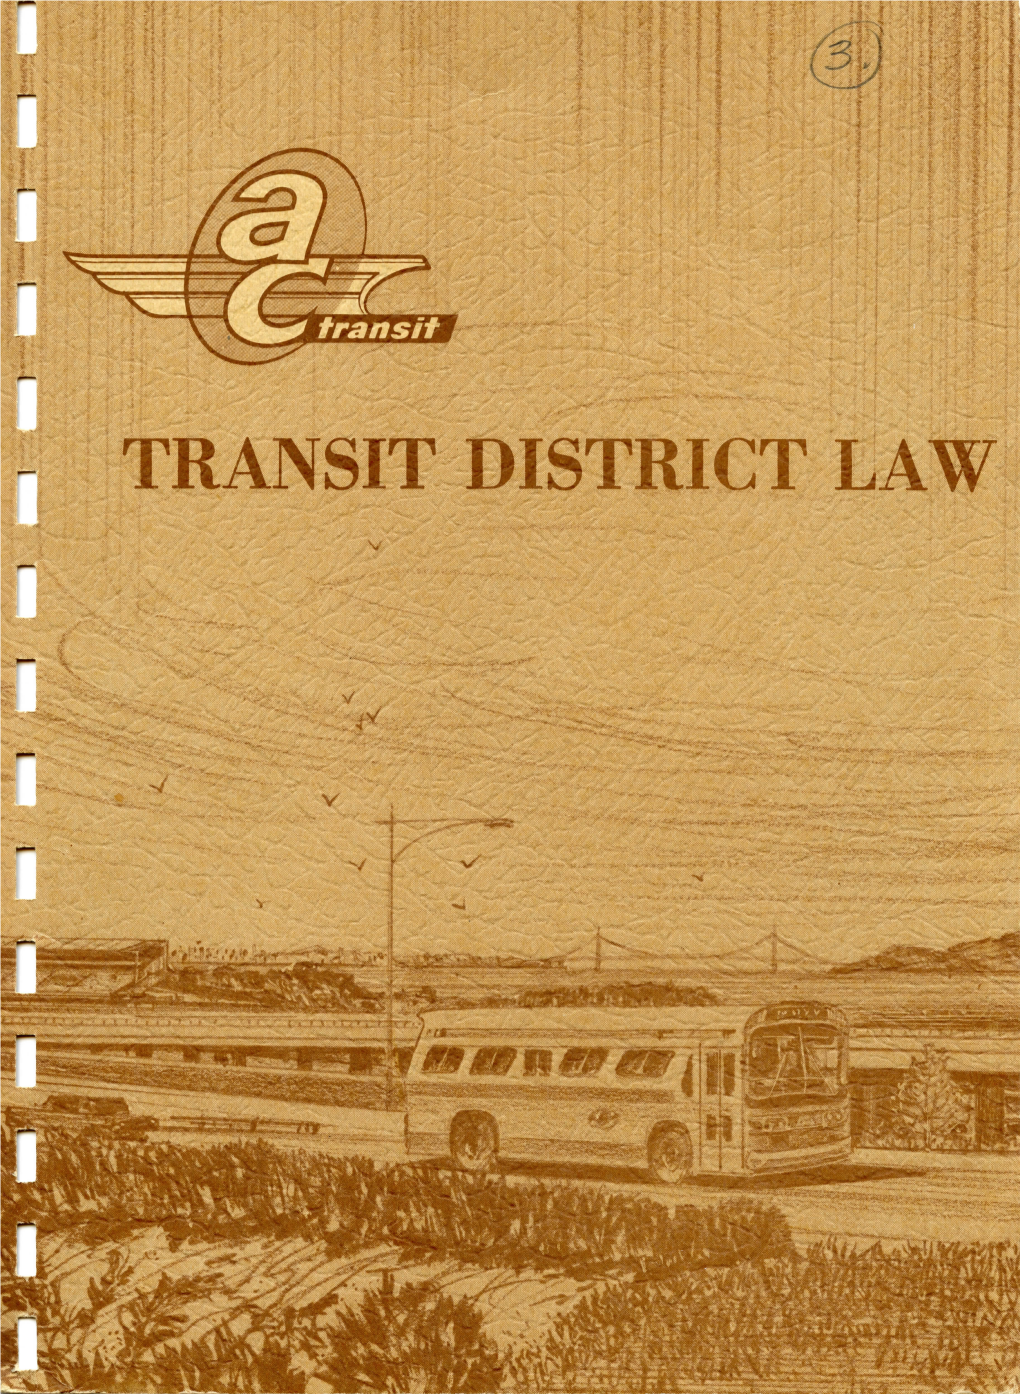 Transit District Law